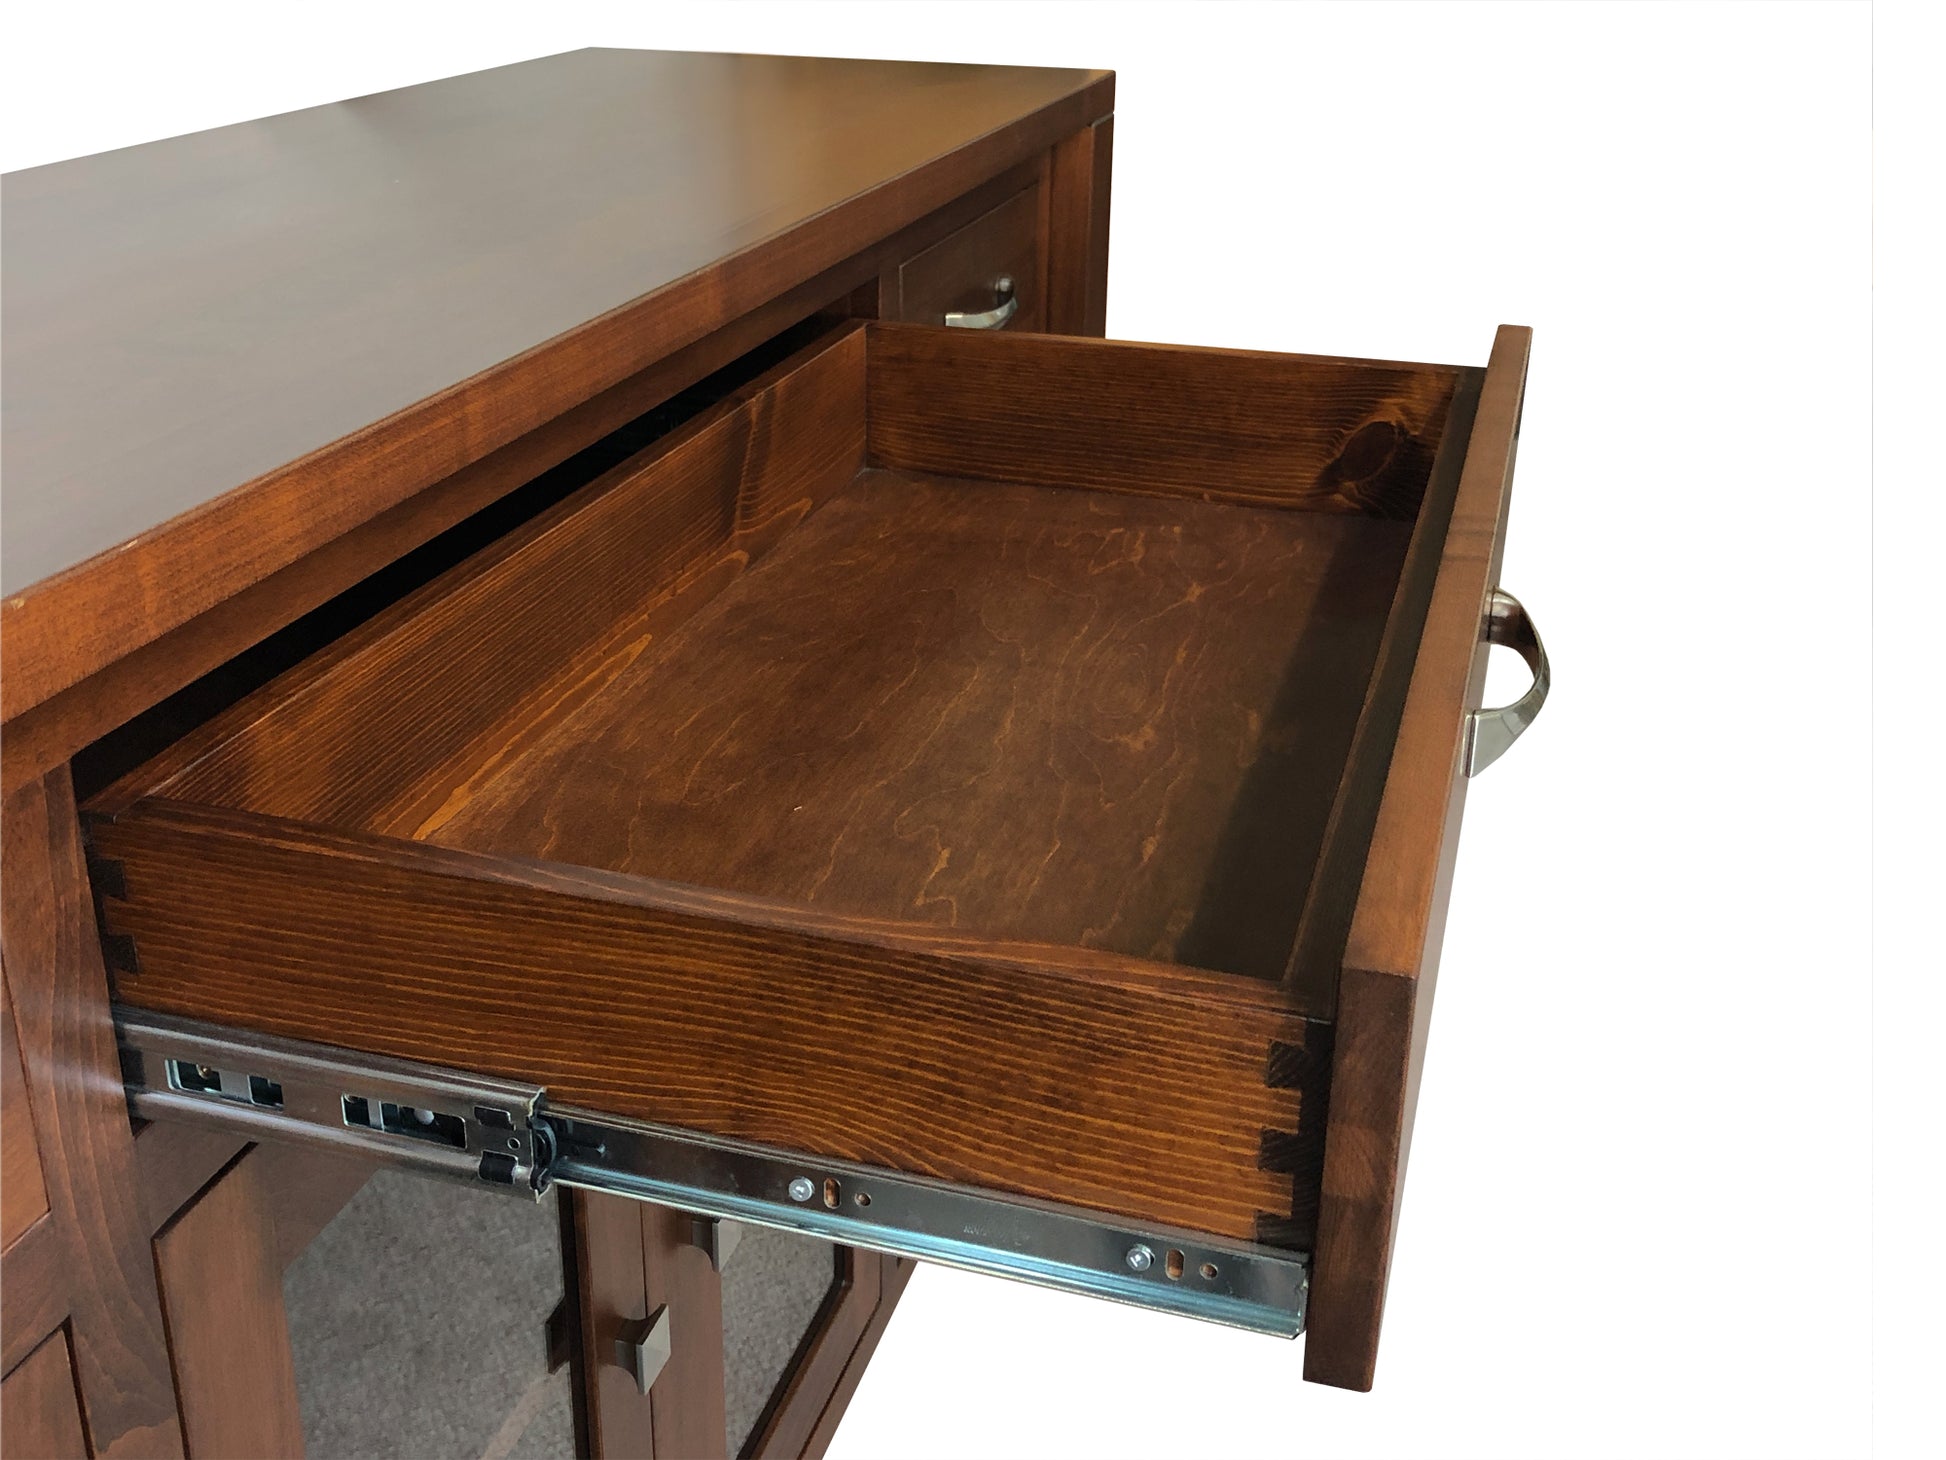 Boxwood -drawer detail